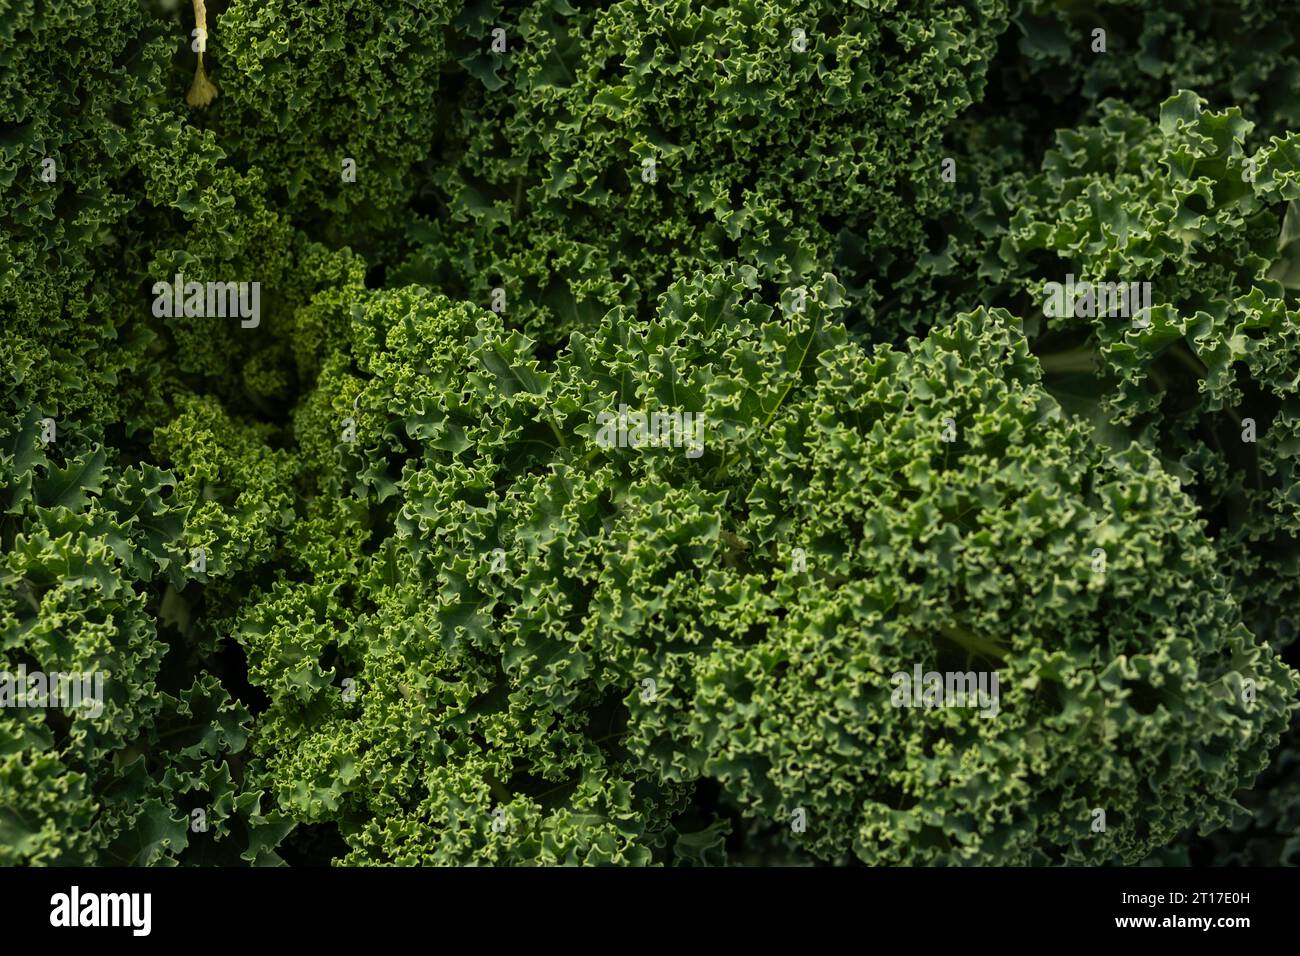 Garten Eleganz: Grünkohl und Curly Cabbage zeigen natürliche Schönheit aus nächster Nähe Stockfoto